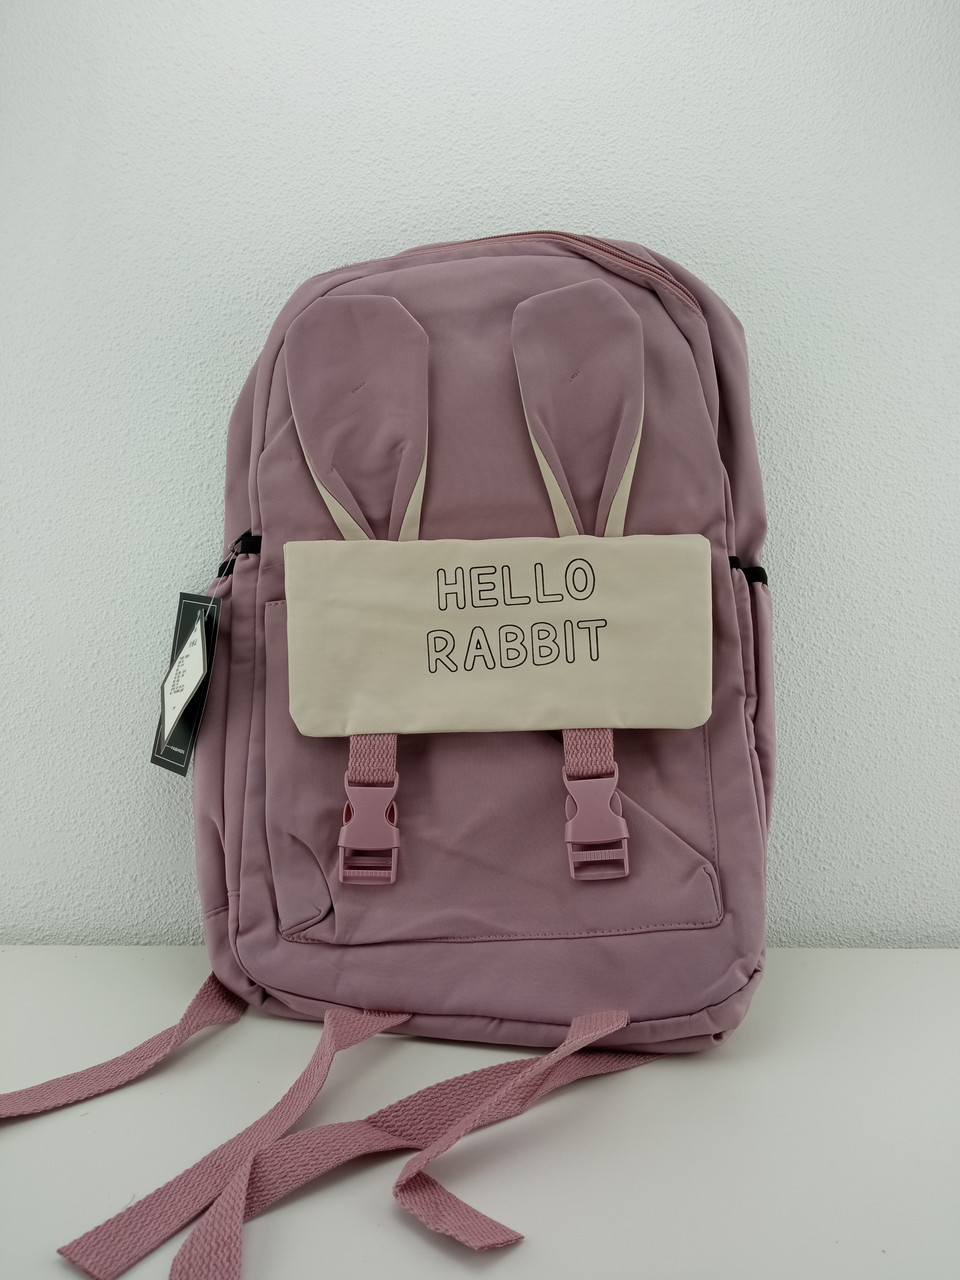 Рюкзак Hello Rabbit бледно-розовый 40 х 30 см, фото 1